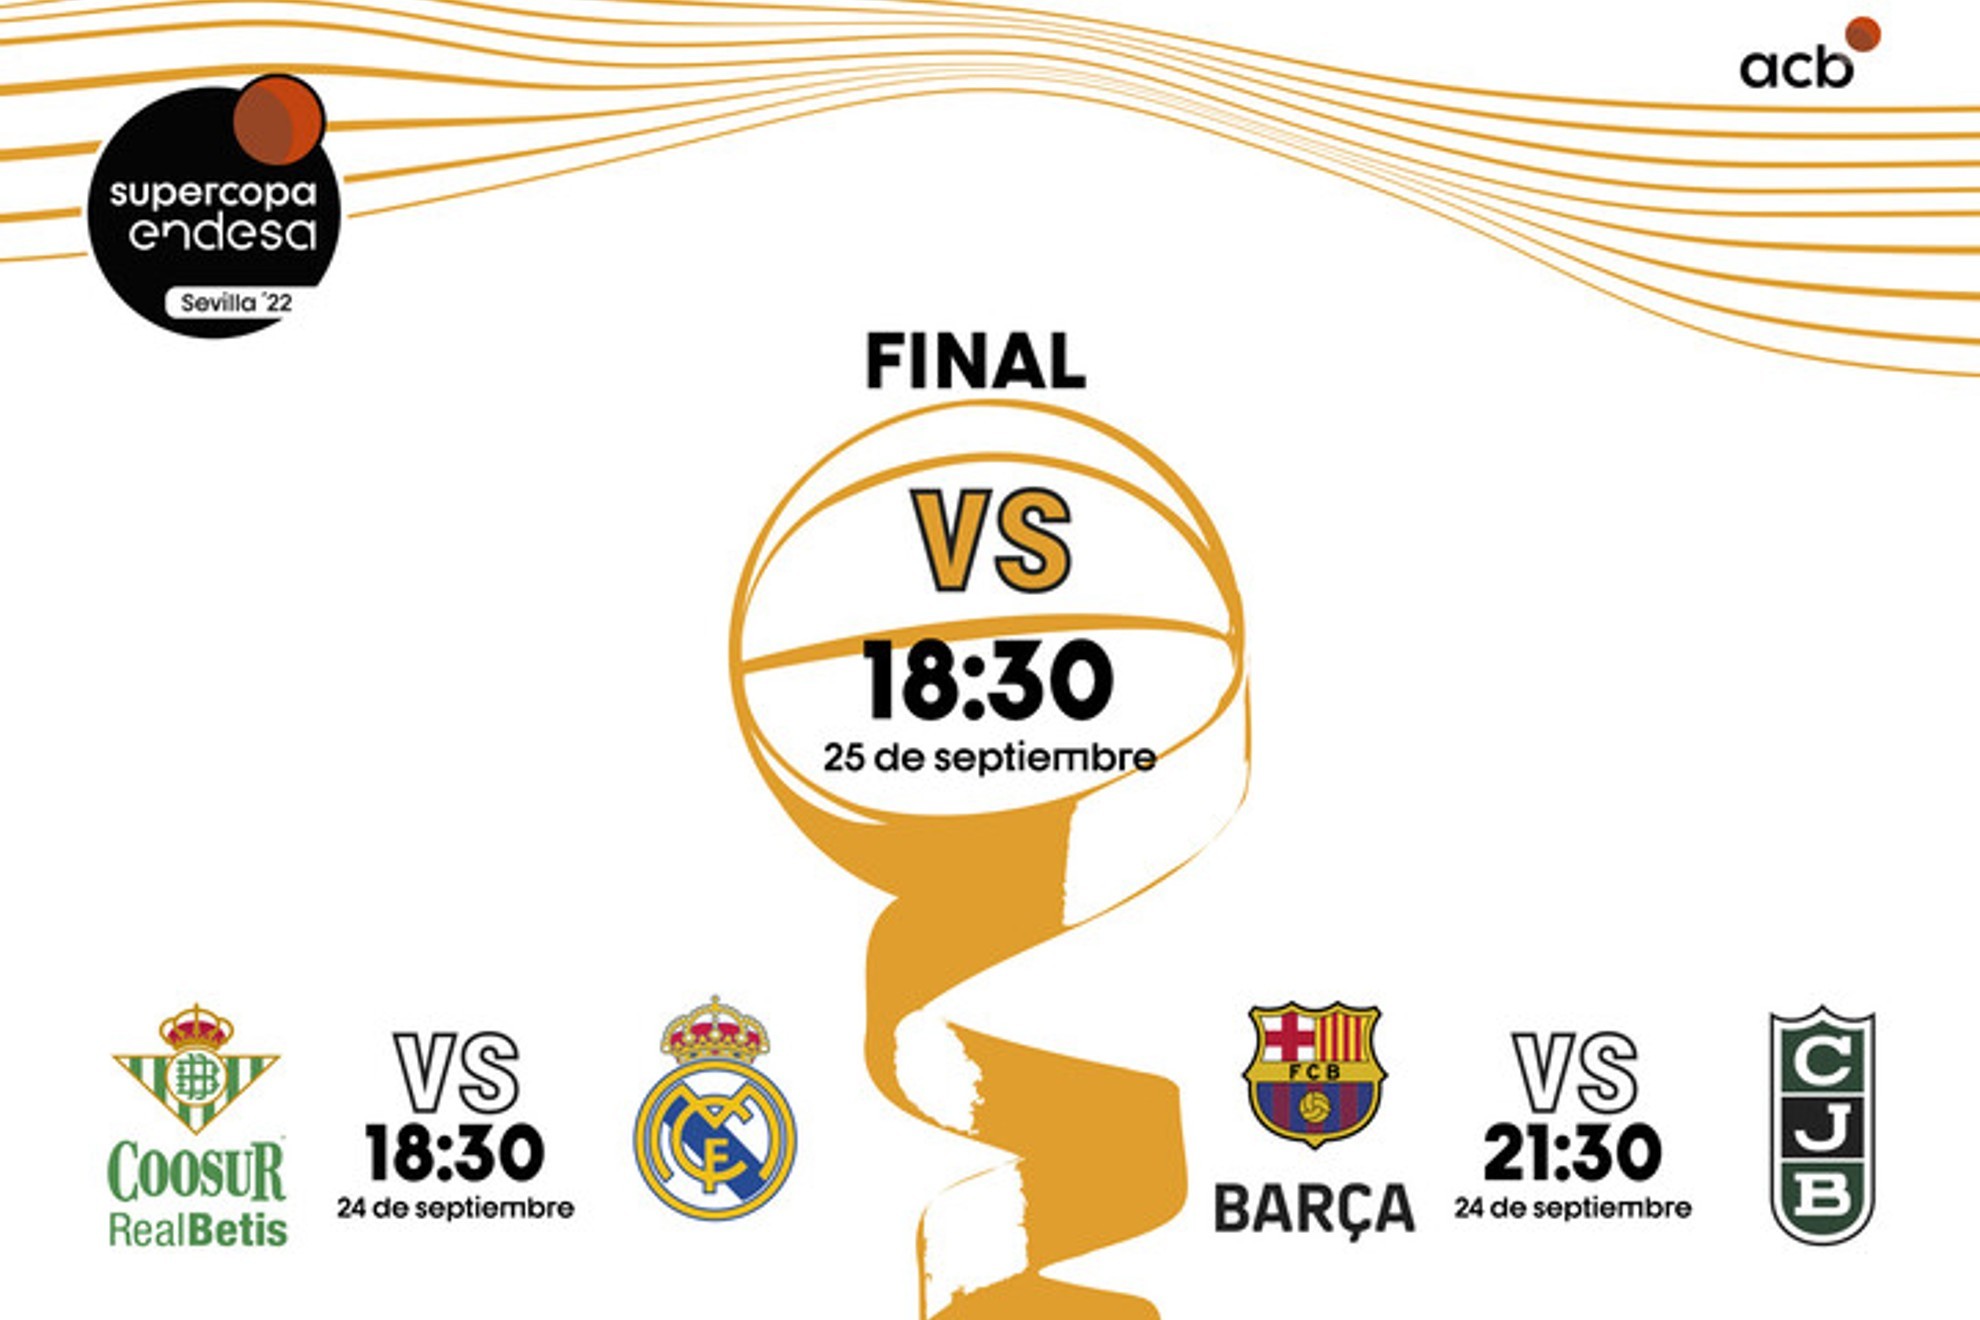 Coosur Betis-Real Madrid y Bar�a-Joventut, semifinales de la Supercopa ACB